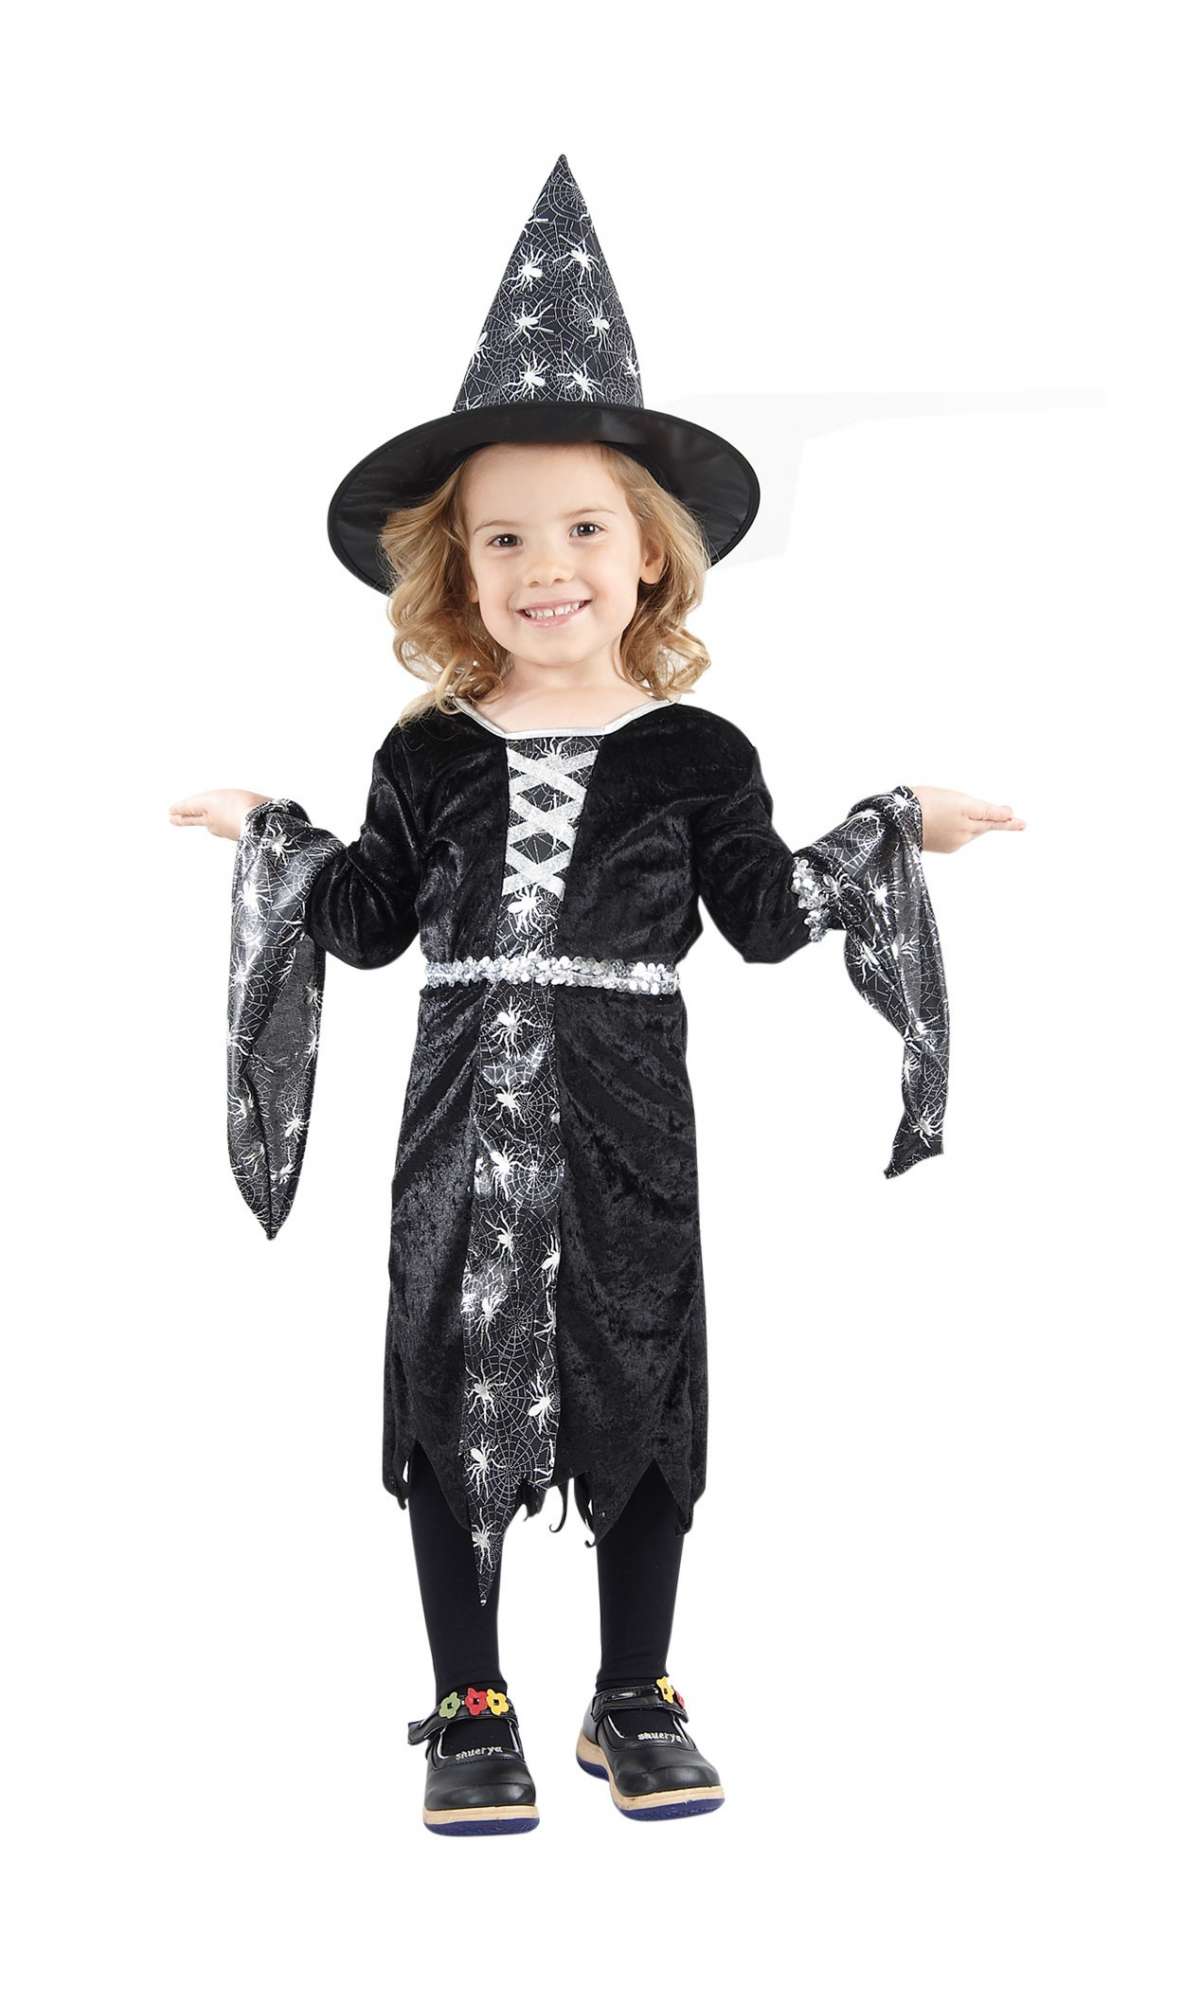 Ragnatele sul costume di Halloween per bambini